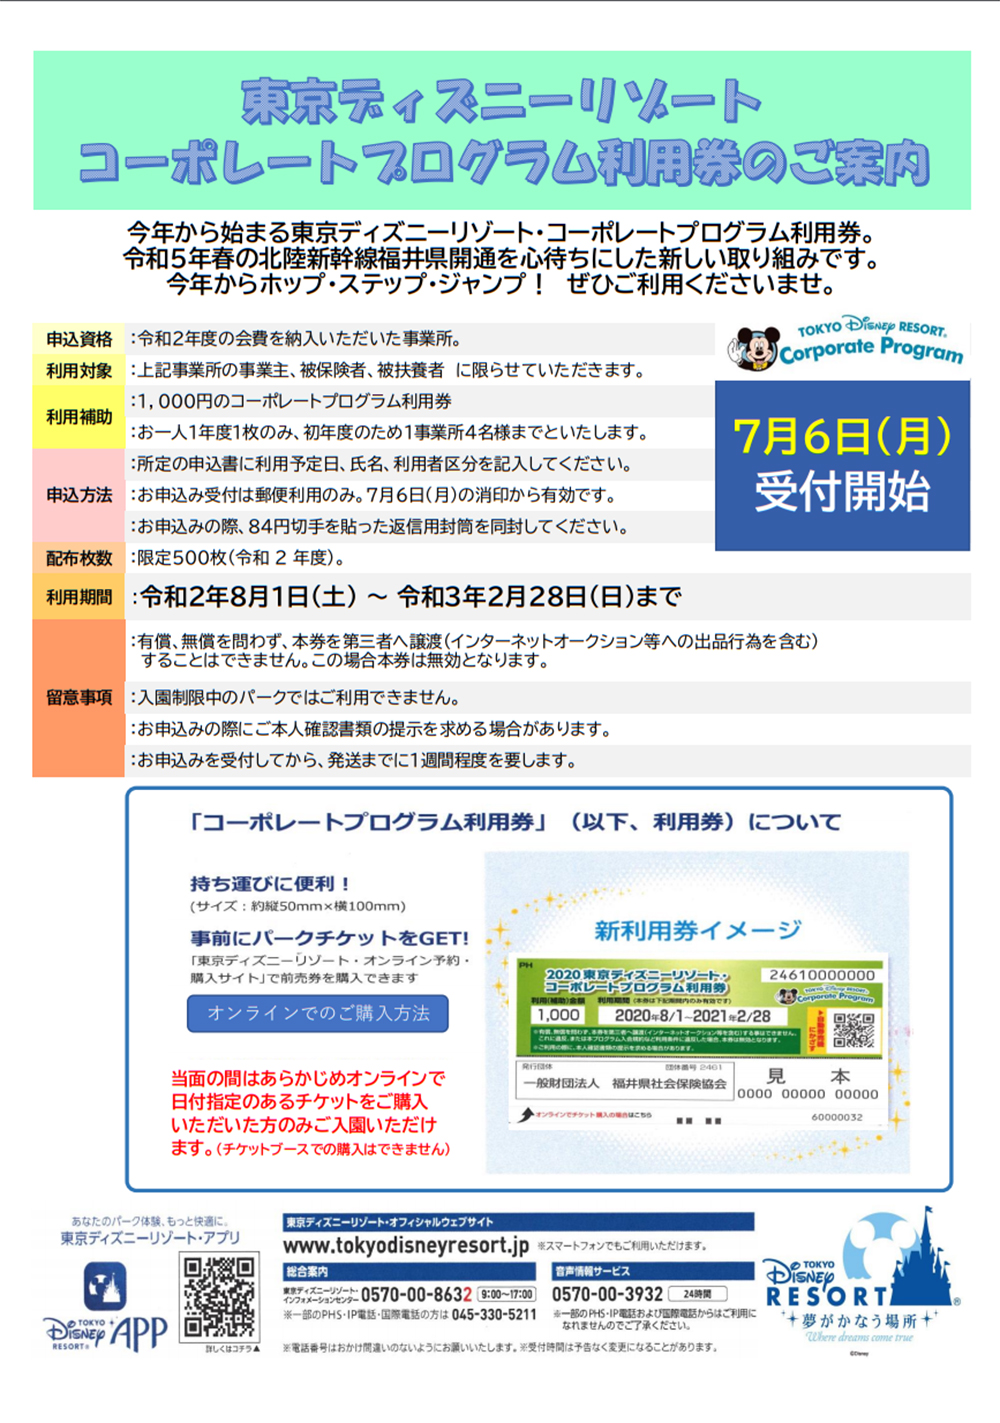 東京ディズニーリゾート コーポレートプログラム利用券について 福井県社会保険協会